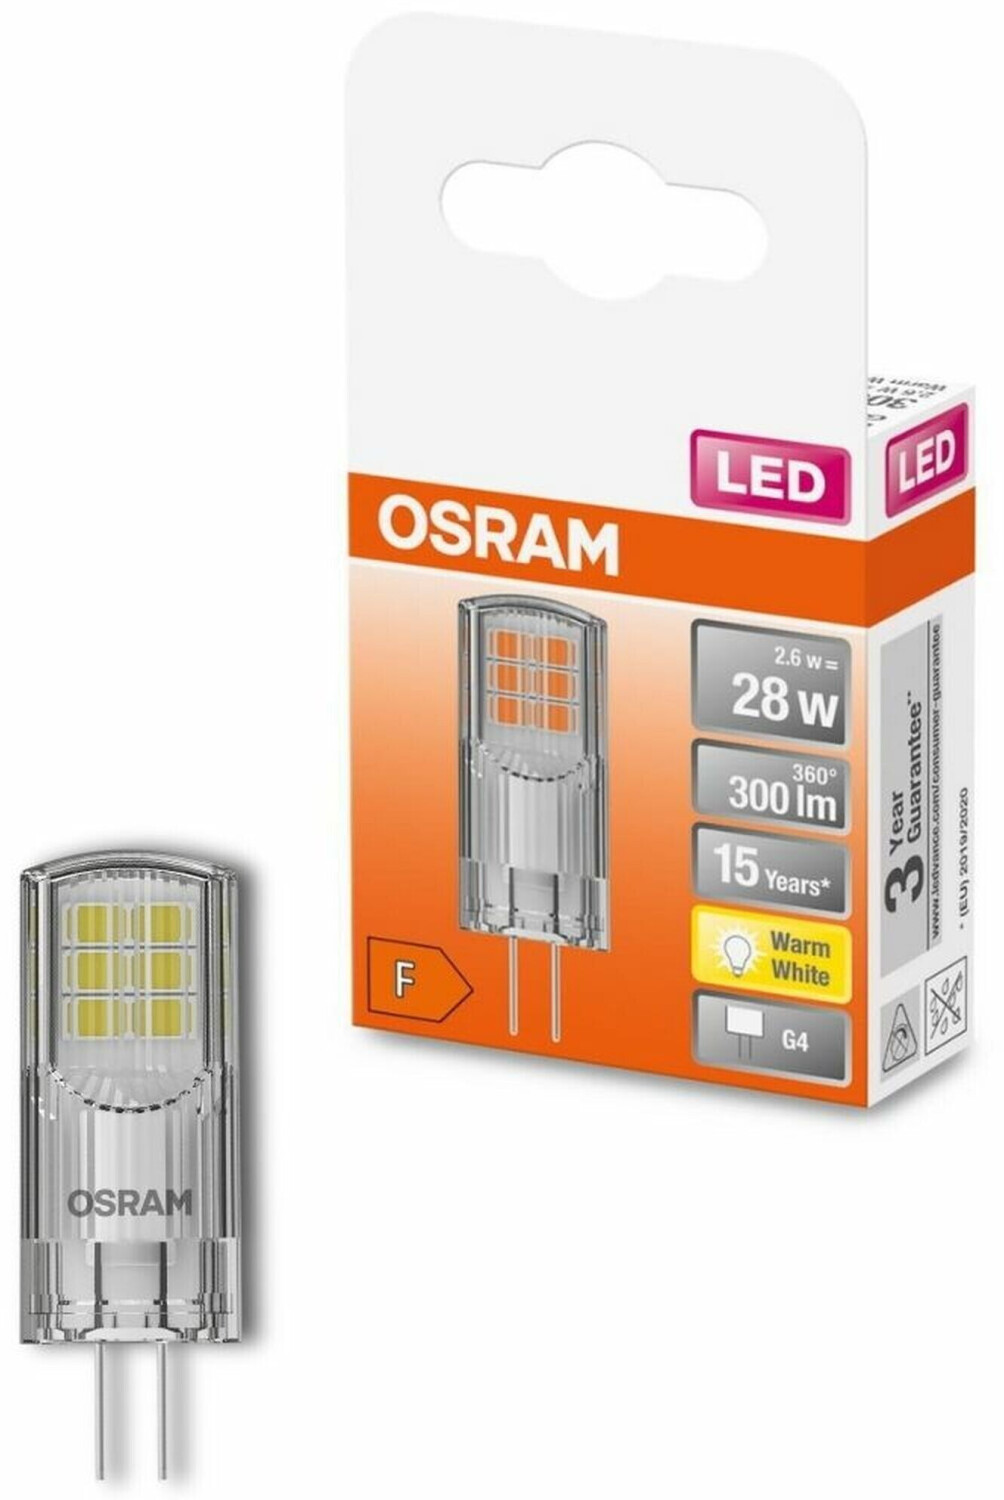 OSRAM LED BASE PIN G4 12 V / Ampoule LED G4 180 W 20) blanc chaud 2700 K  Pack de 3 - à prix avantageux chez LTT